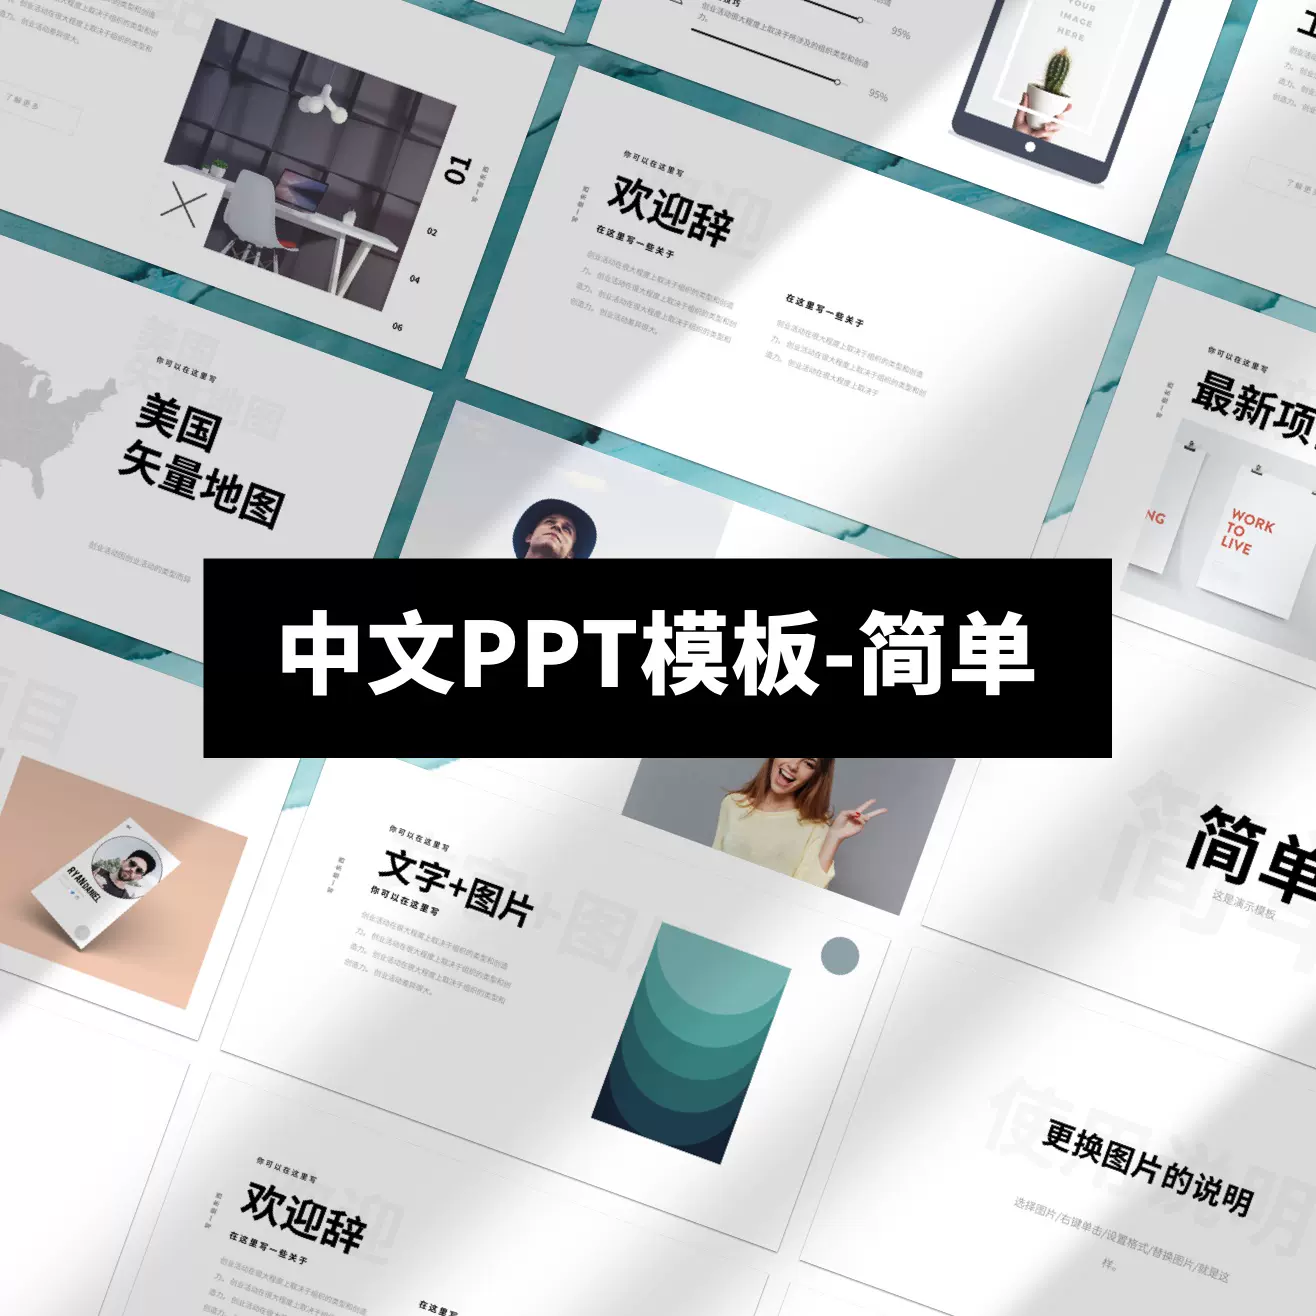 中文ppt极简keynote 幻灯片设计制作素材课件送字体带配图